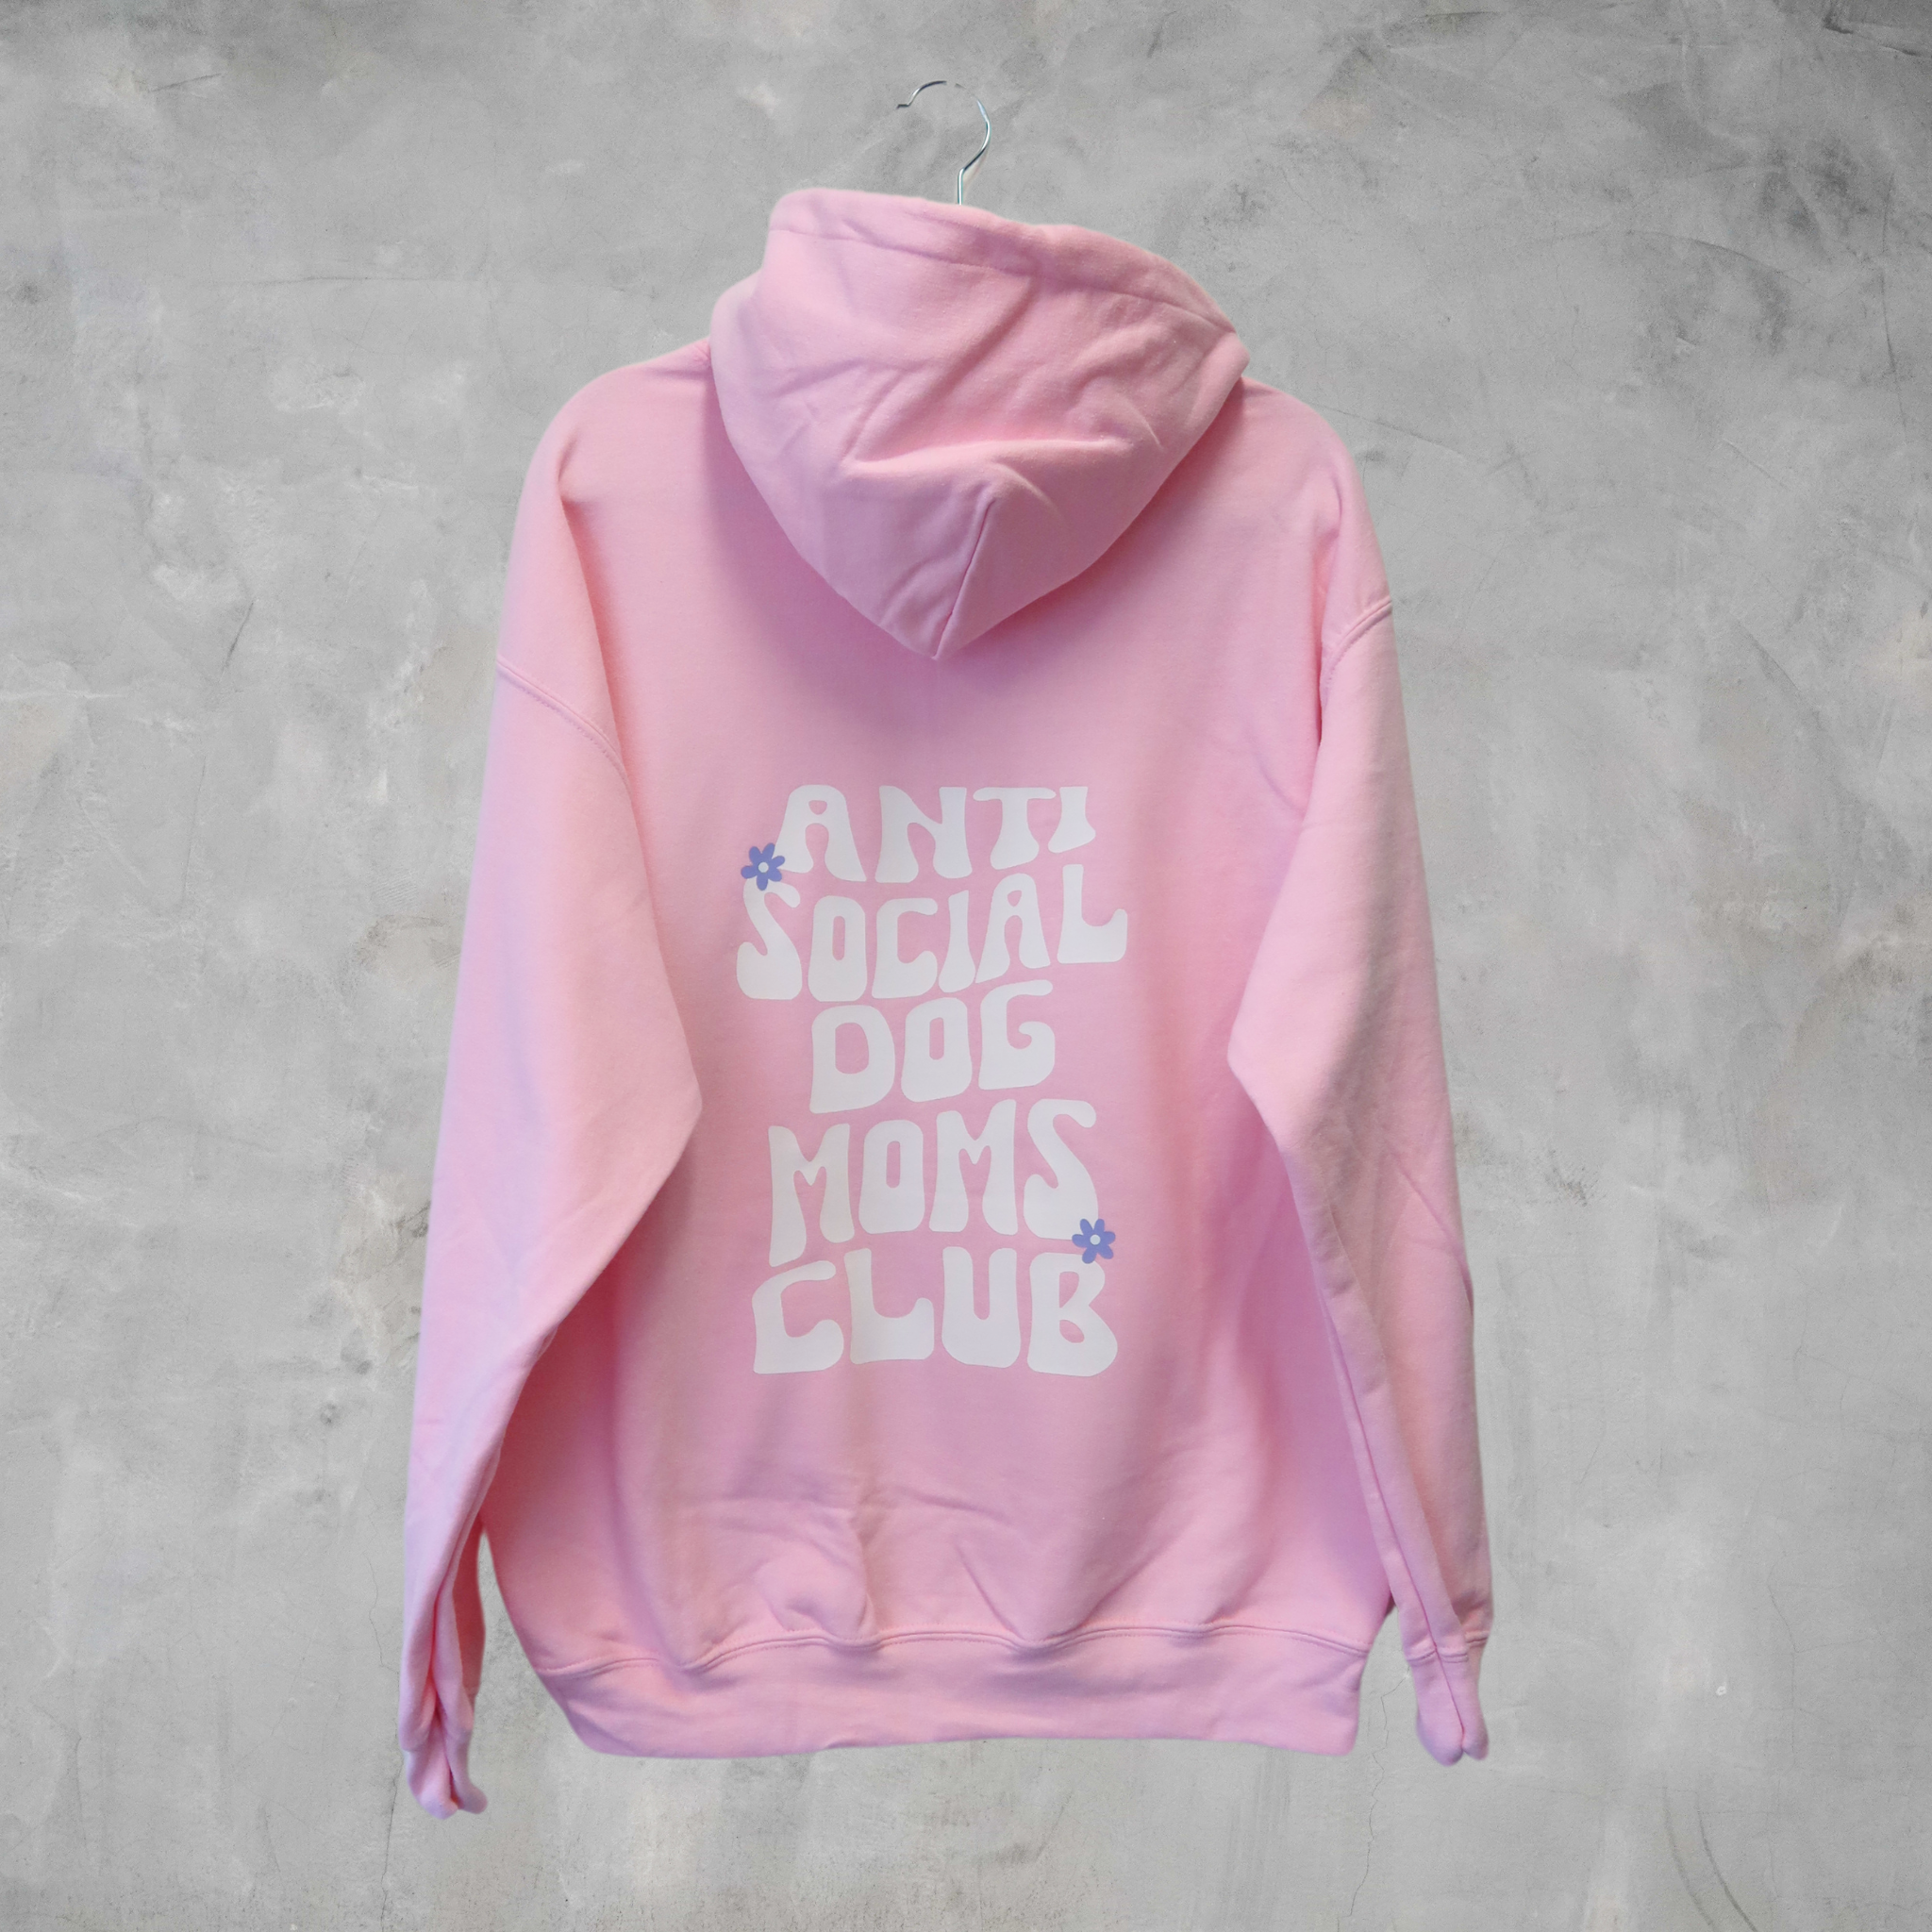 'Anti social dog moms club' hoodie